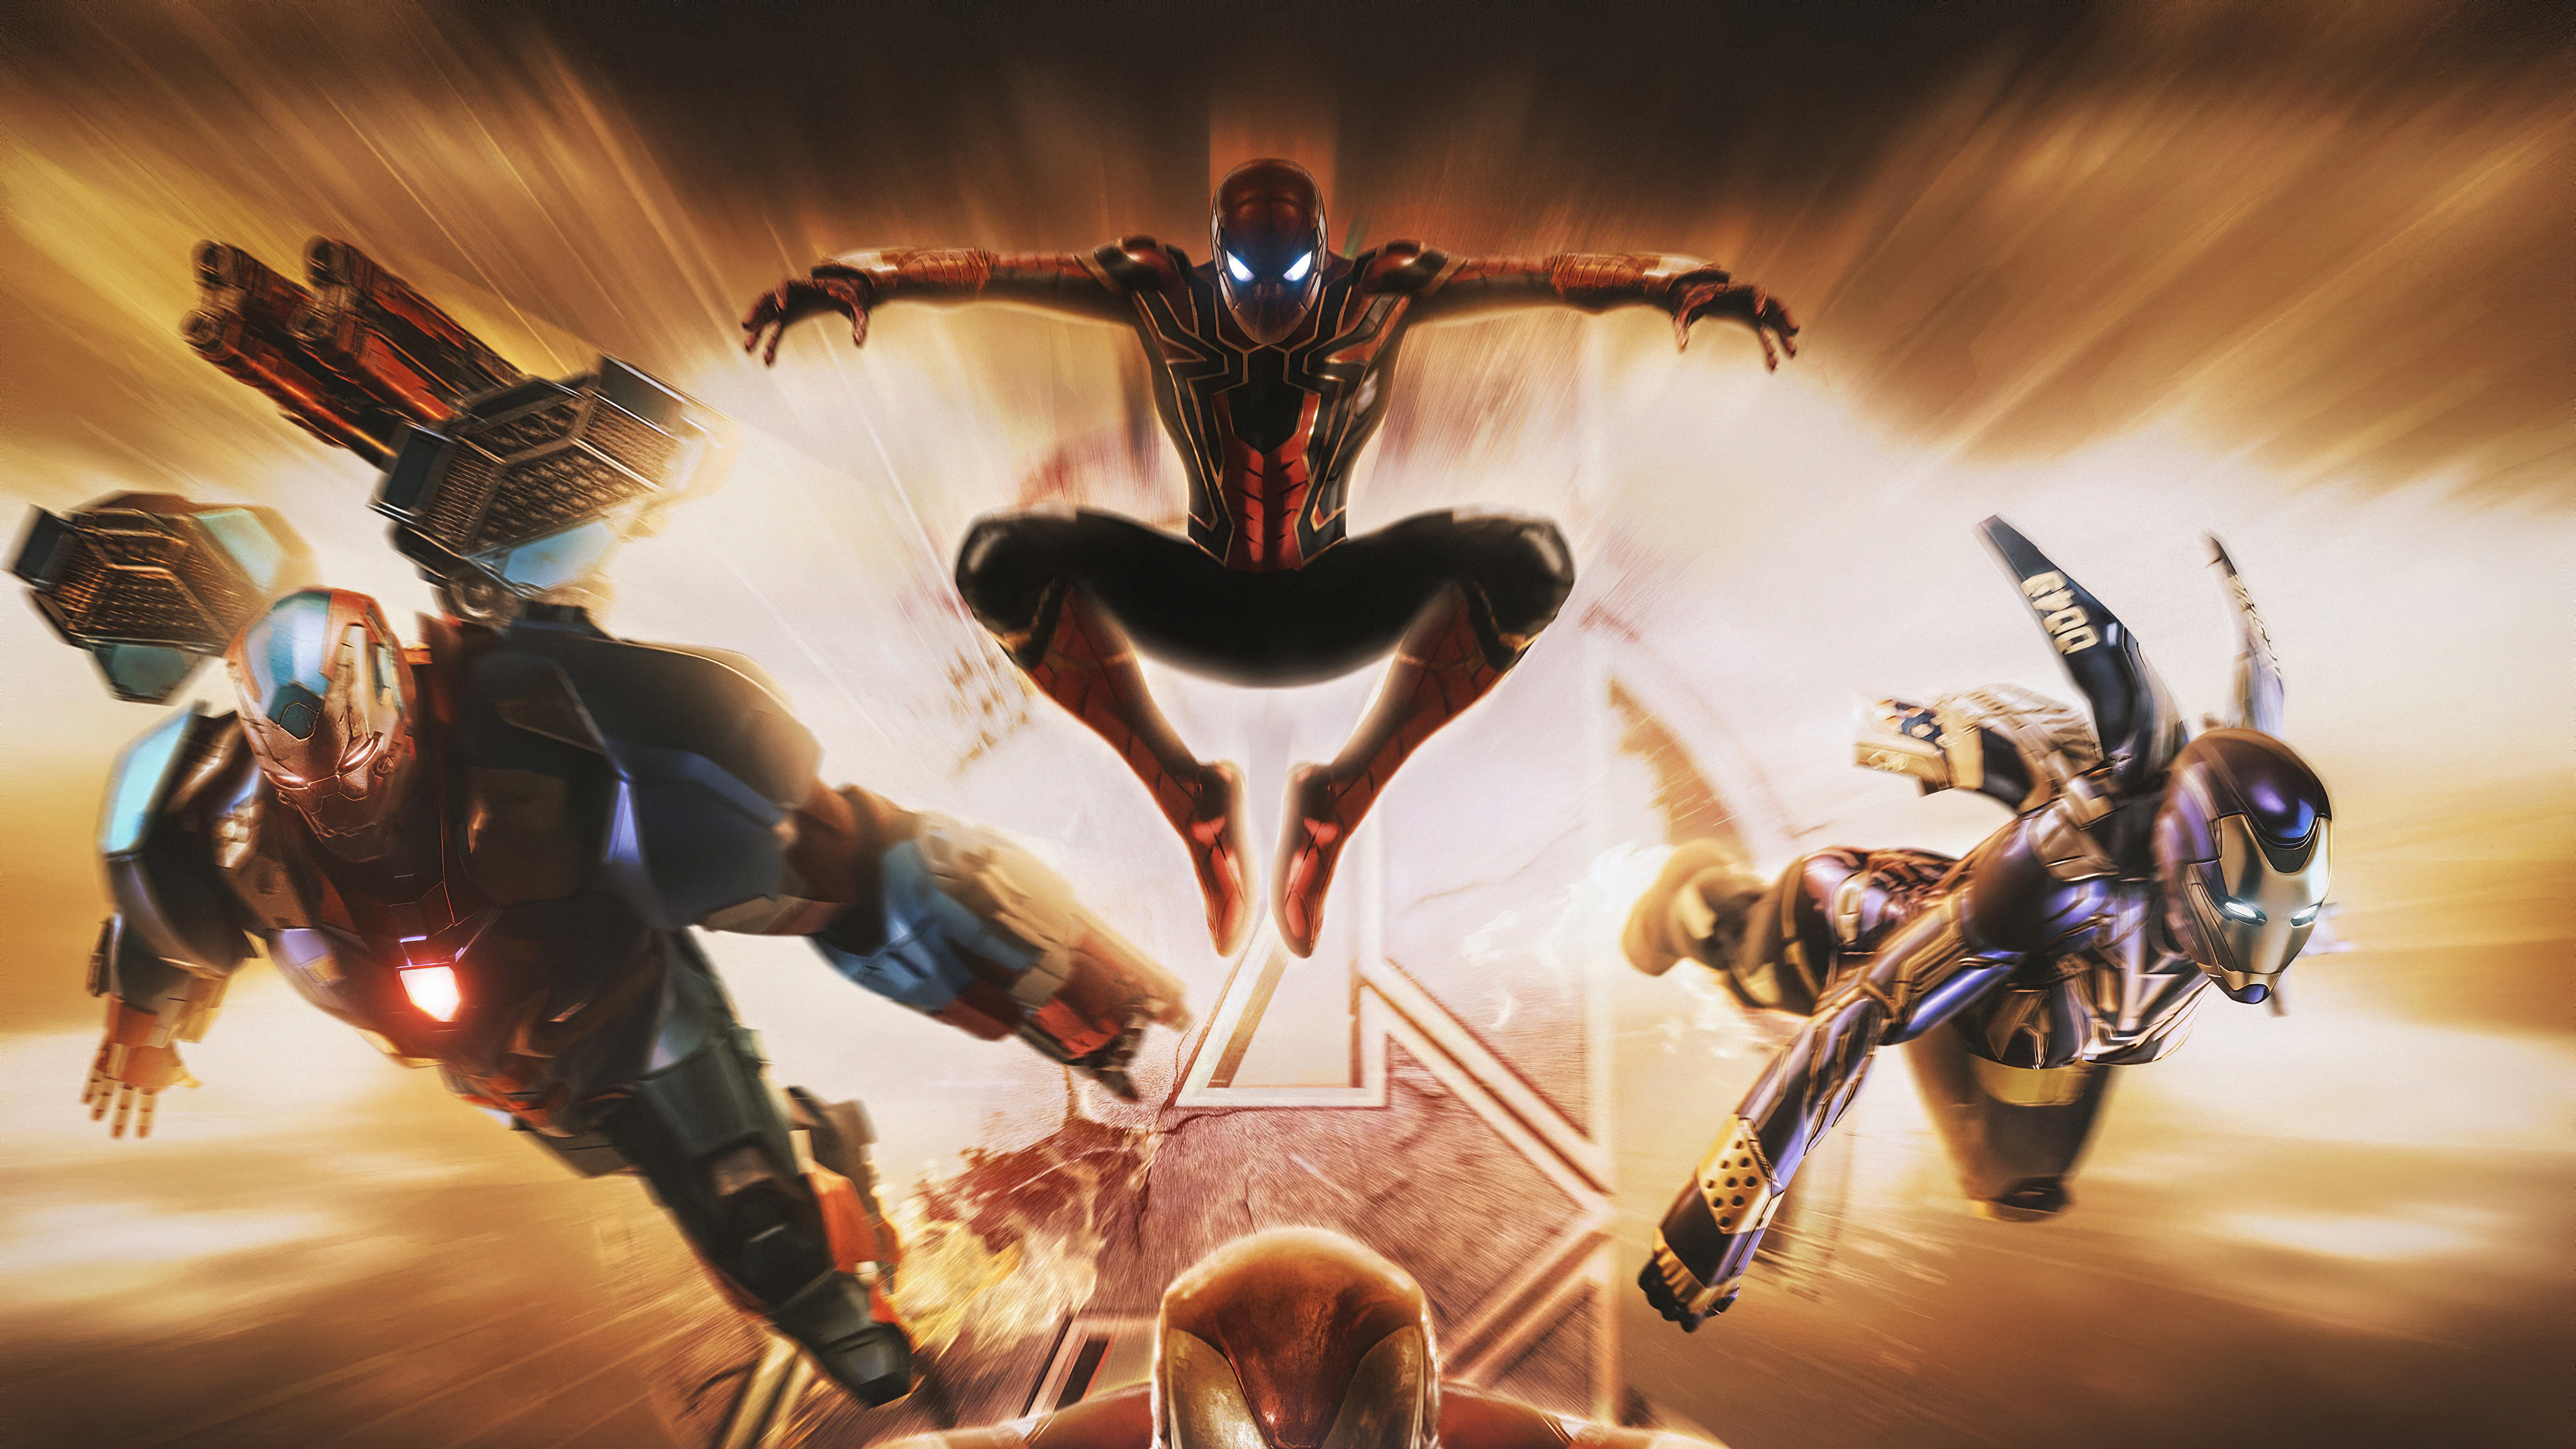 Iron Man Spider Man War Machine - 4096x2304 Wallpaper 